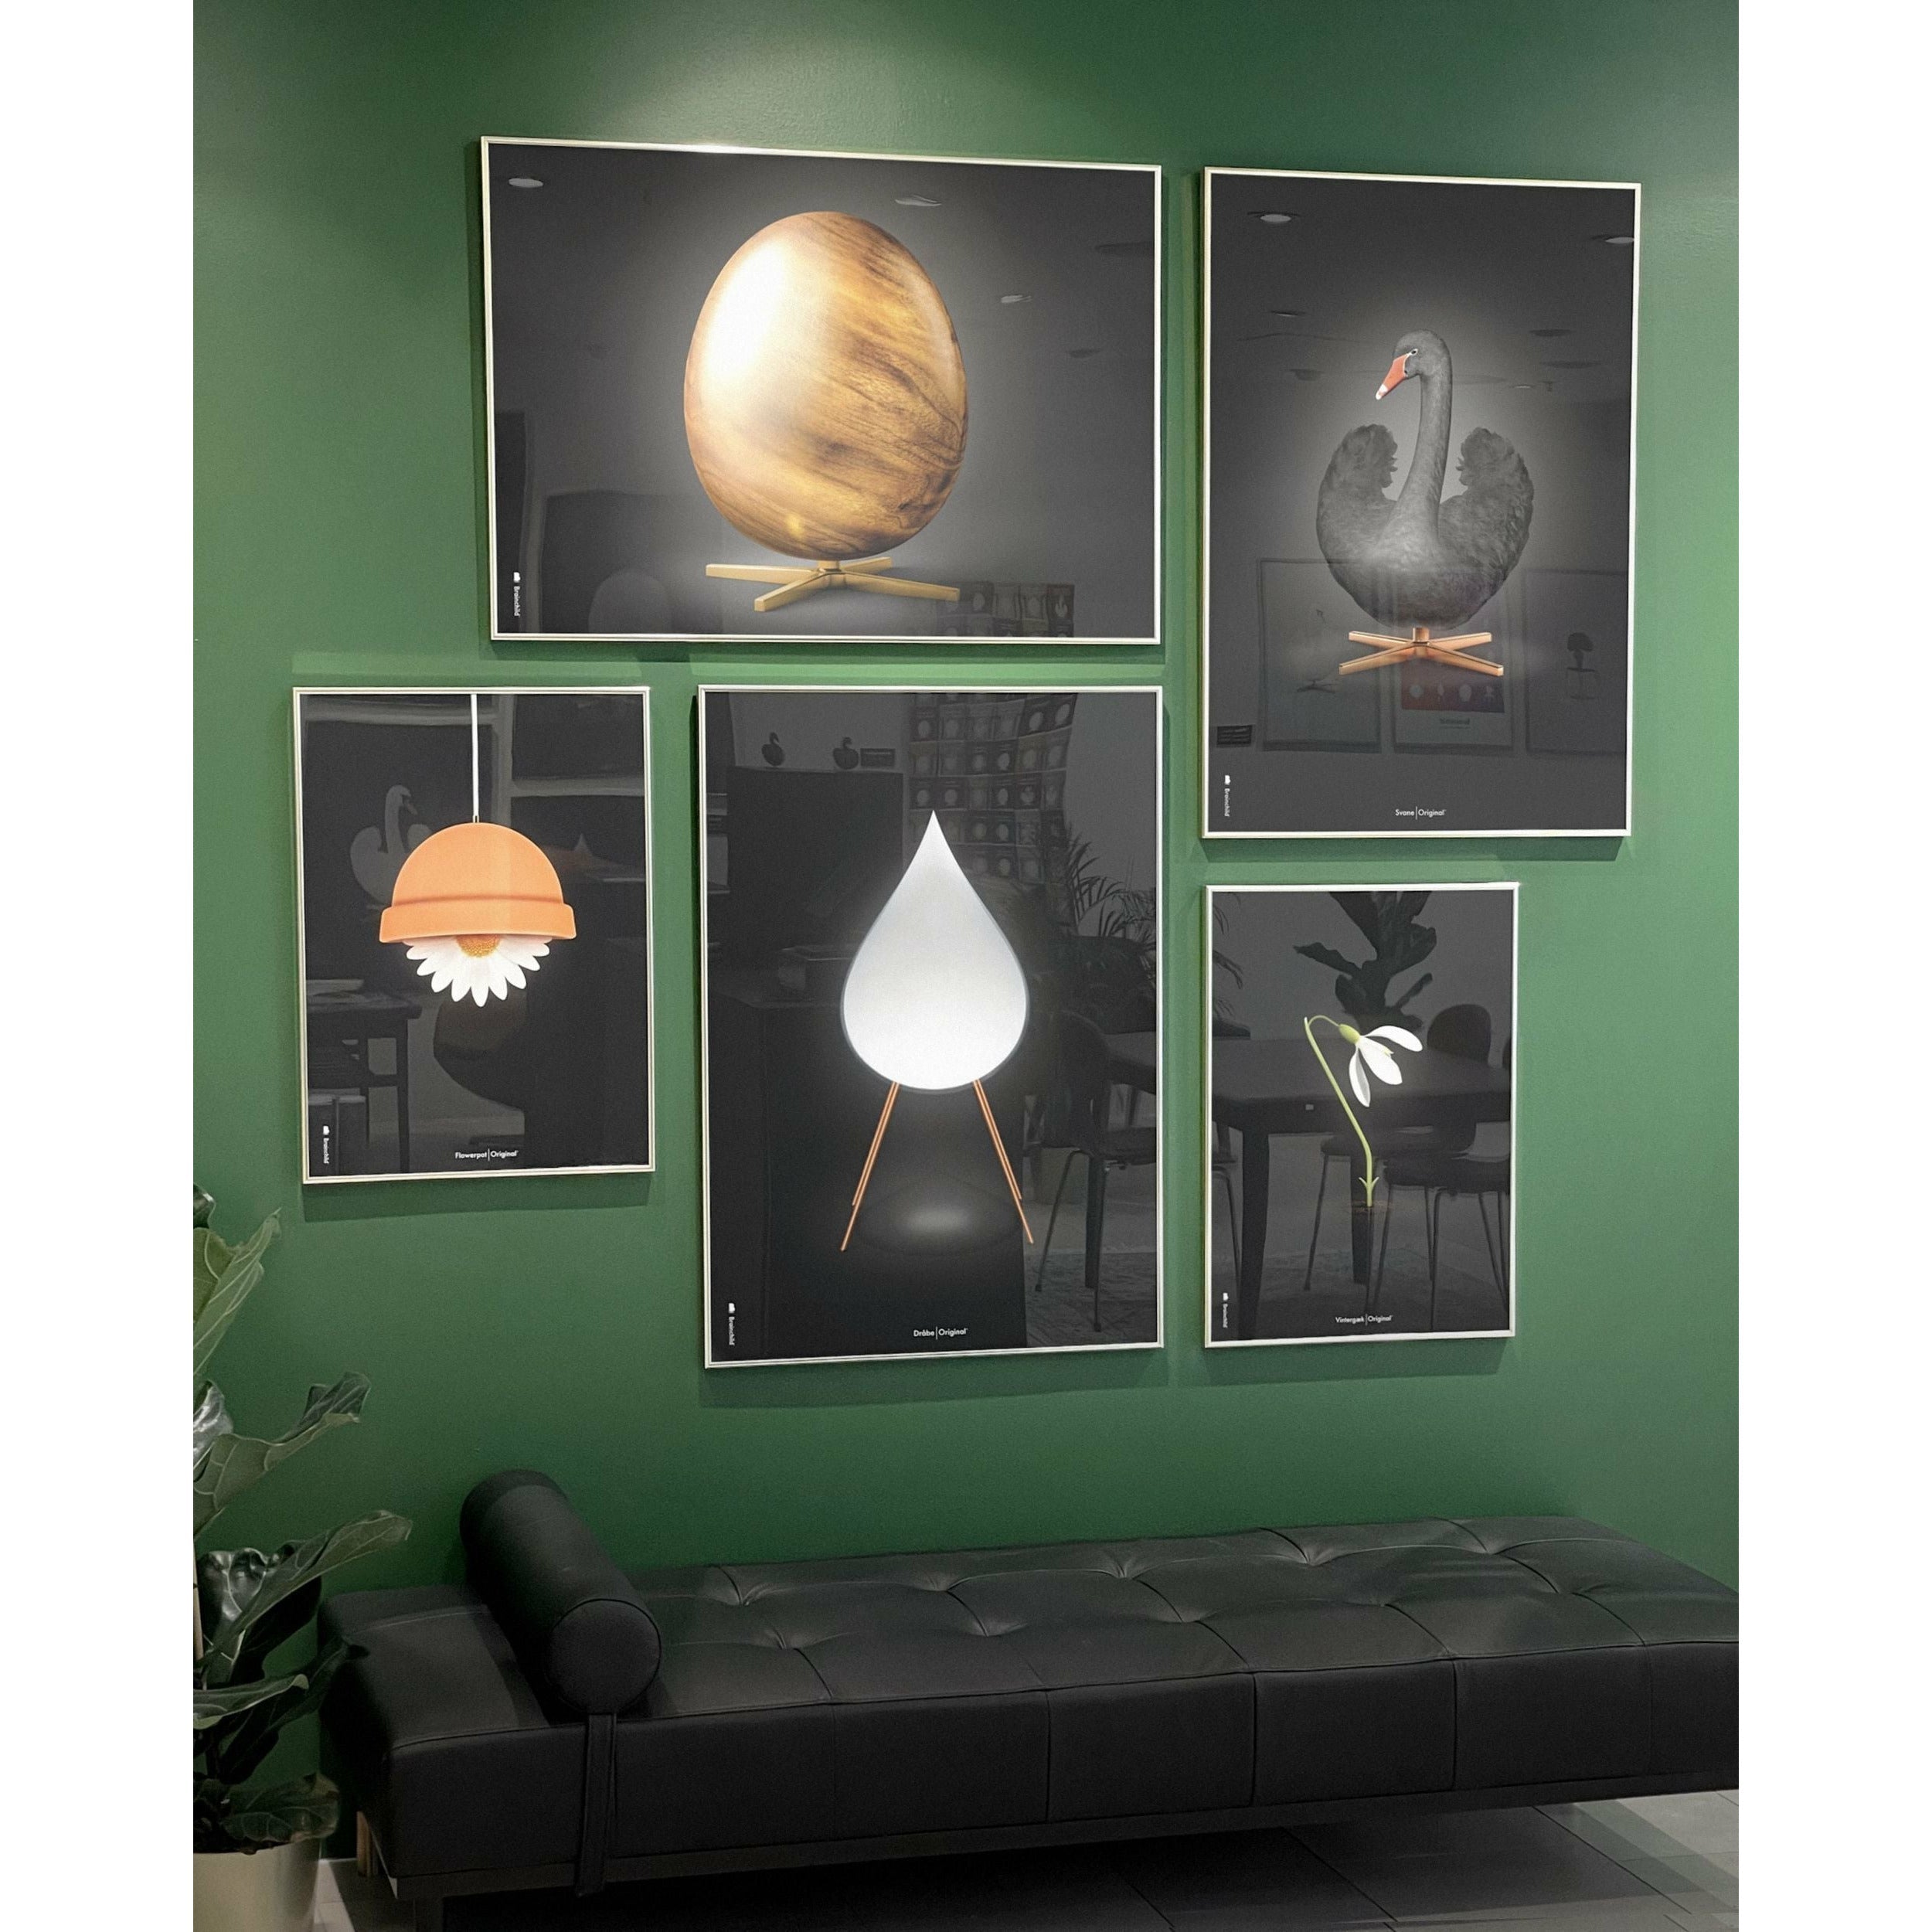 Brainchild Egg Cross Format Poster, Frame In Black Lacquered Wood 30x40 Cm, Black